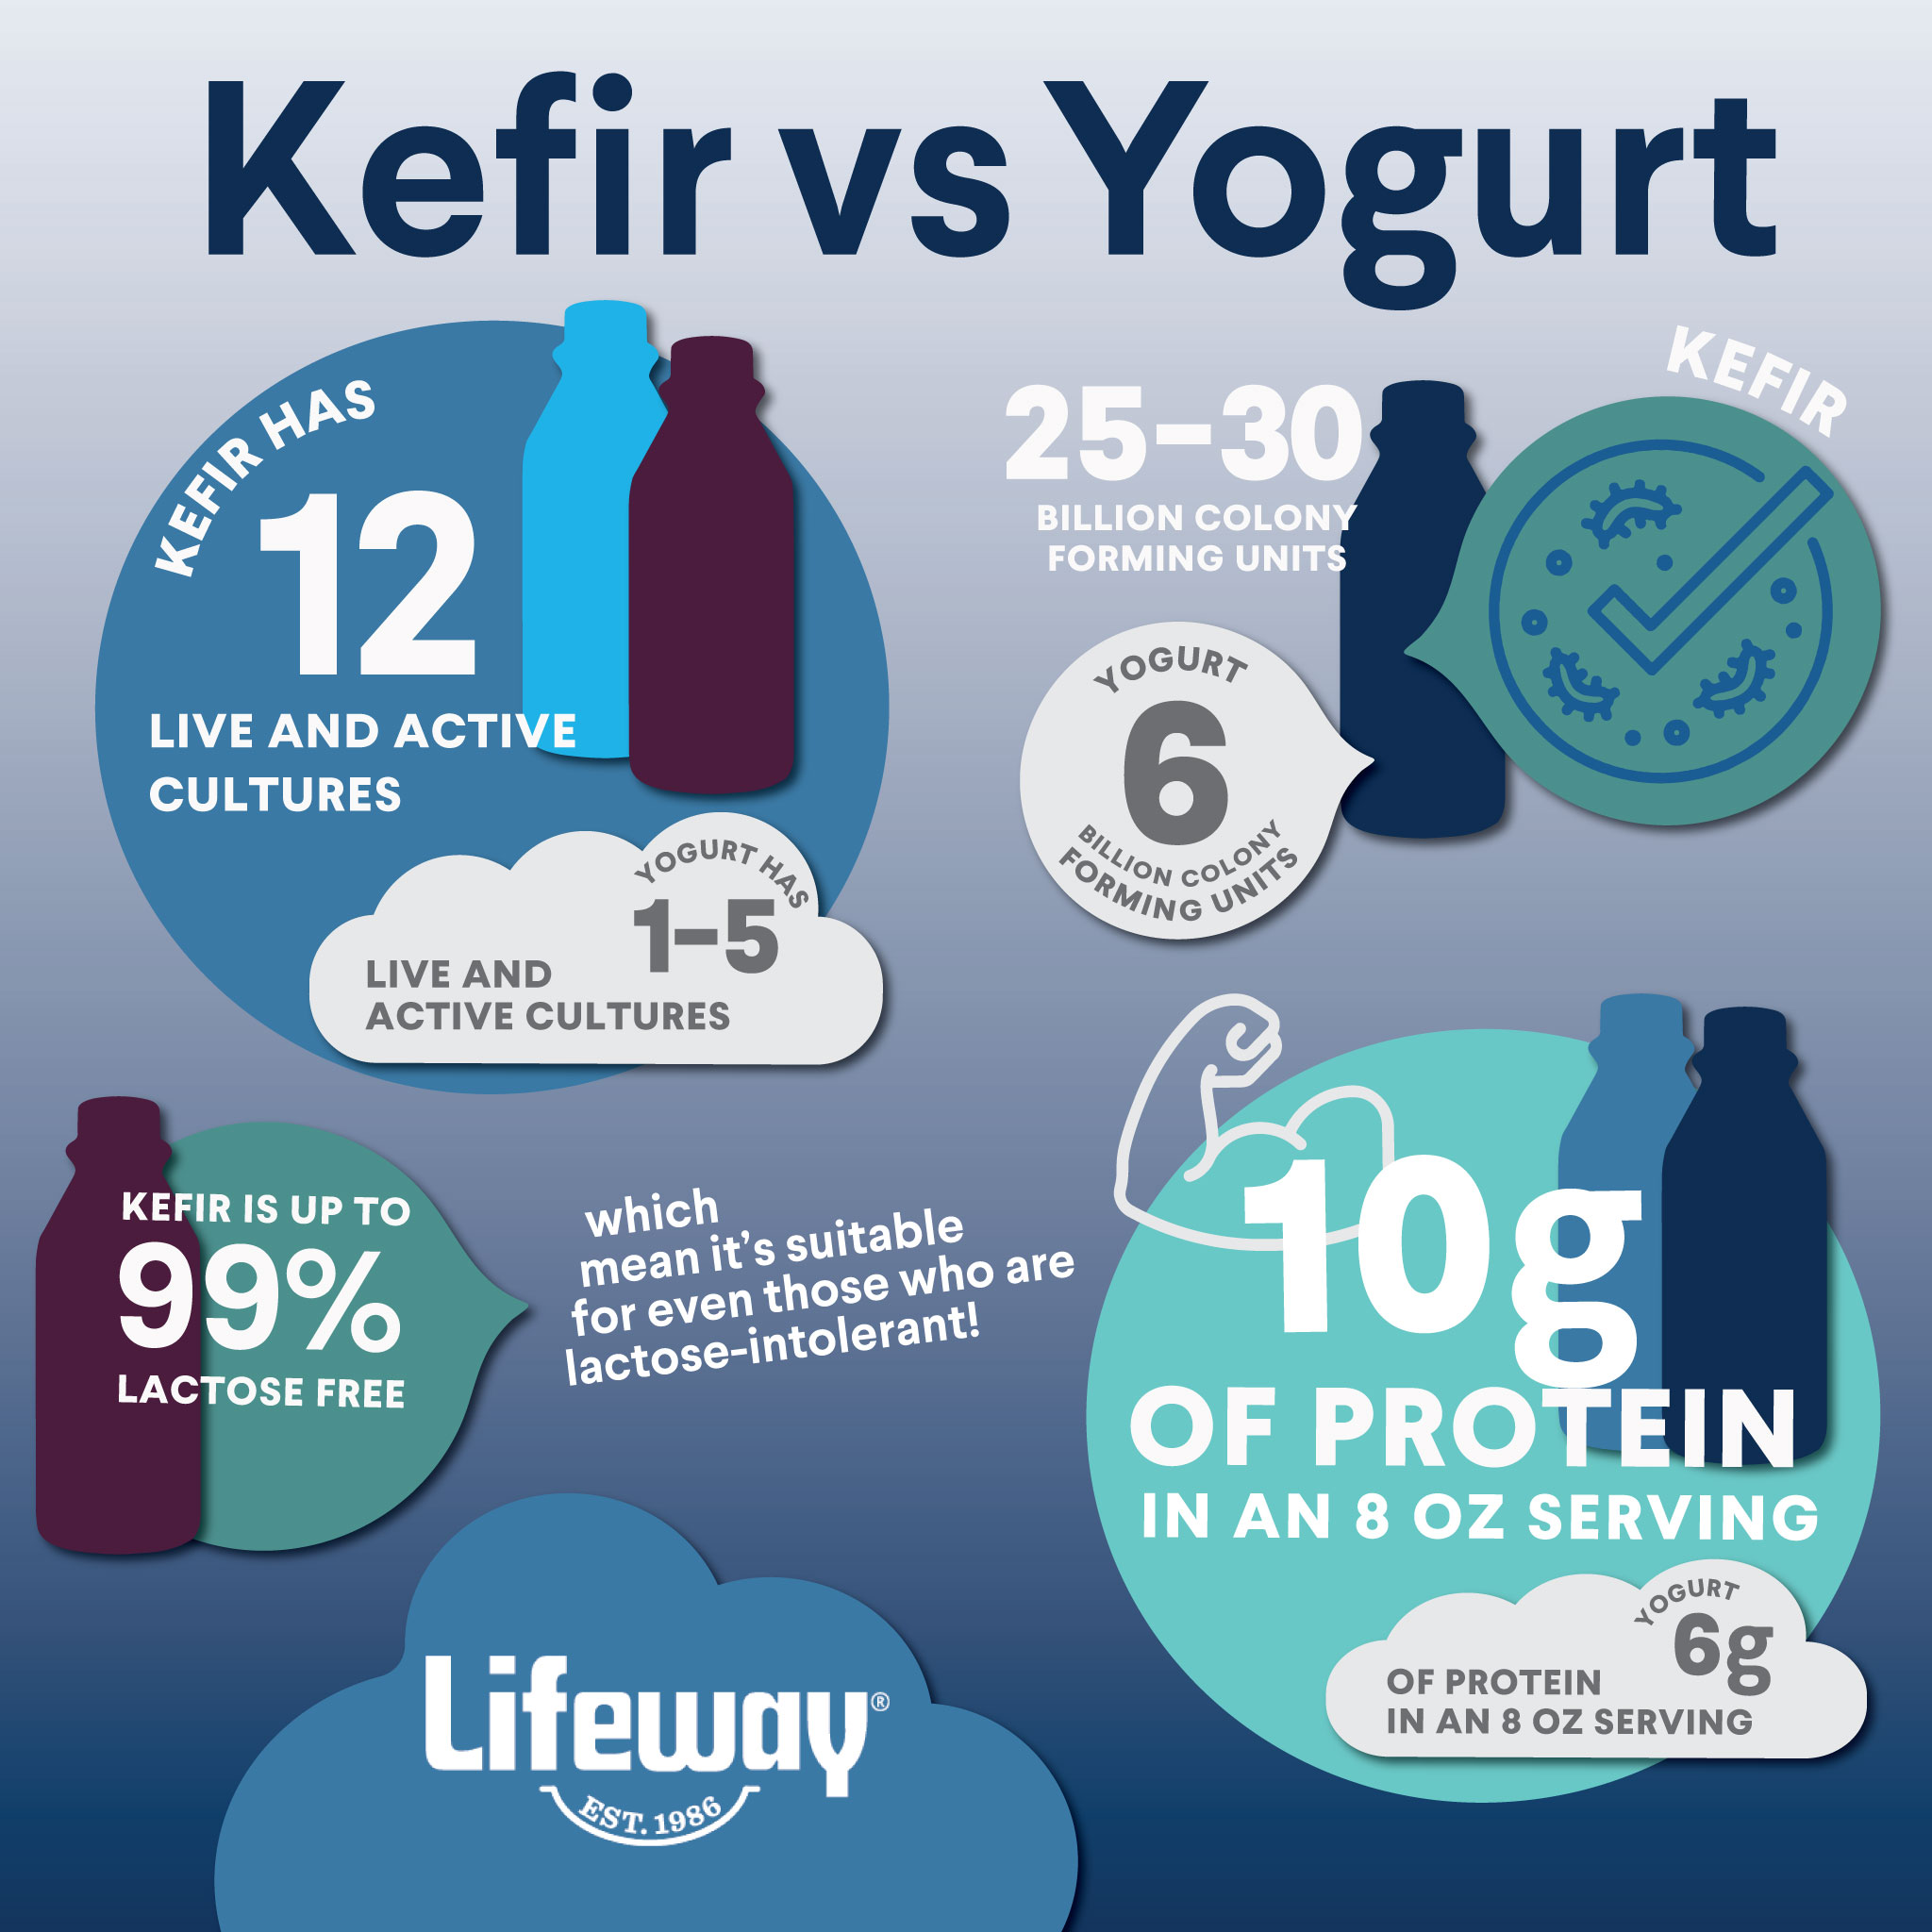 What Is Kefir?